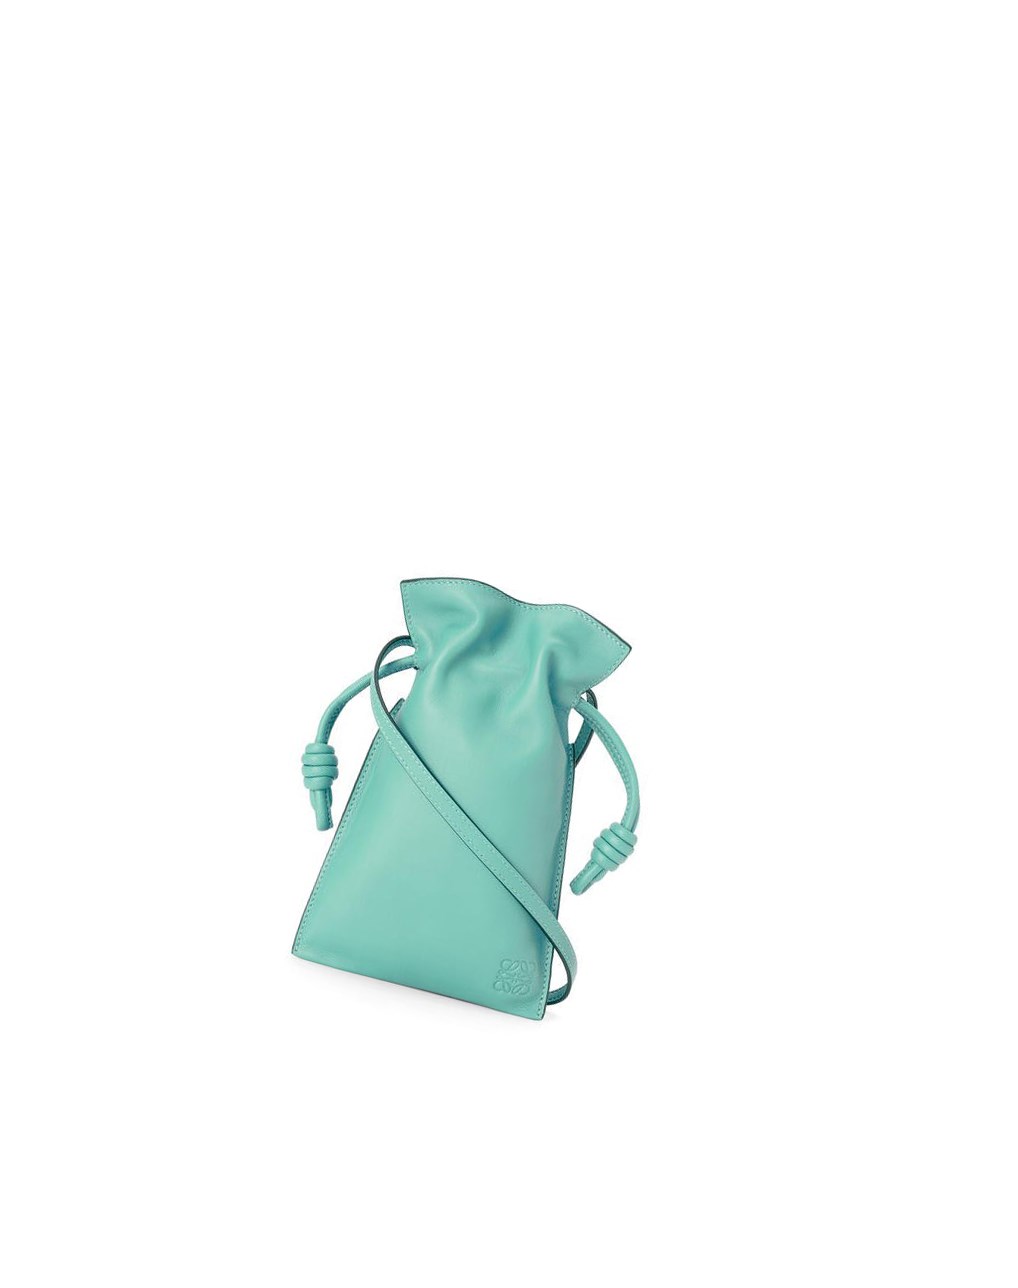 Loewe Flamenco Pocket in nappa calfskin Fresh Mint | CD4513296